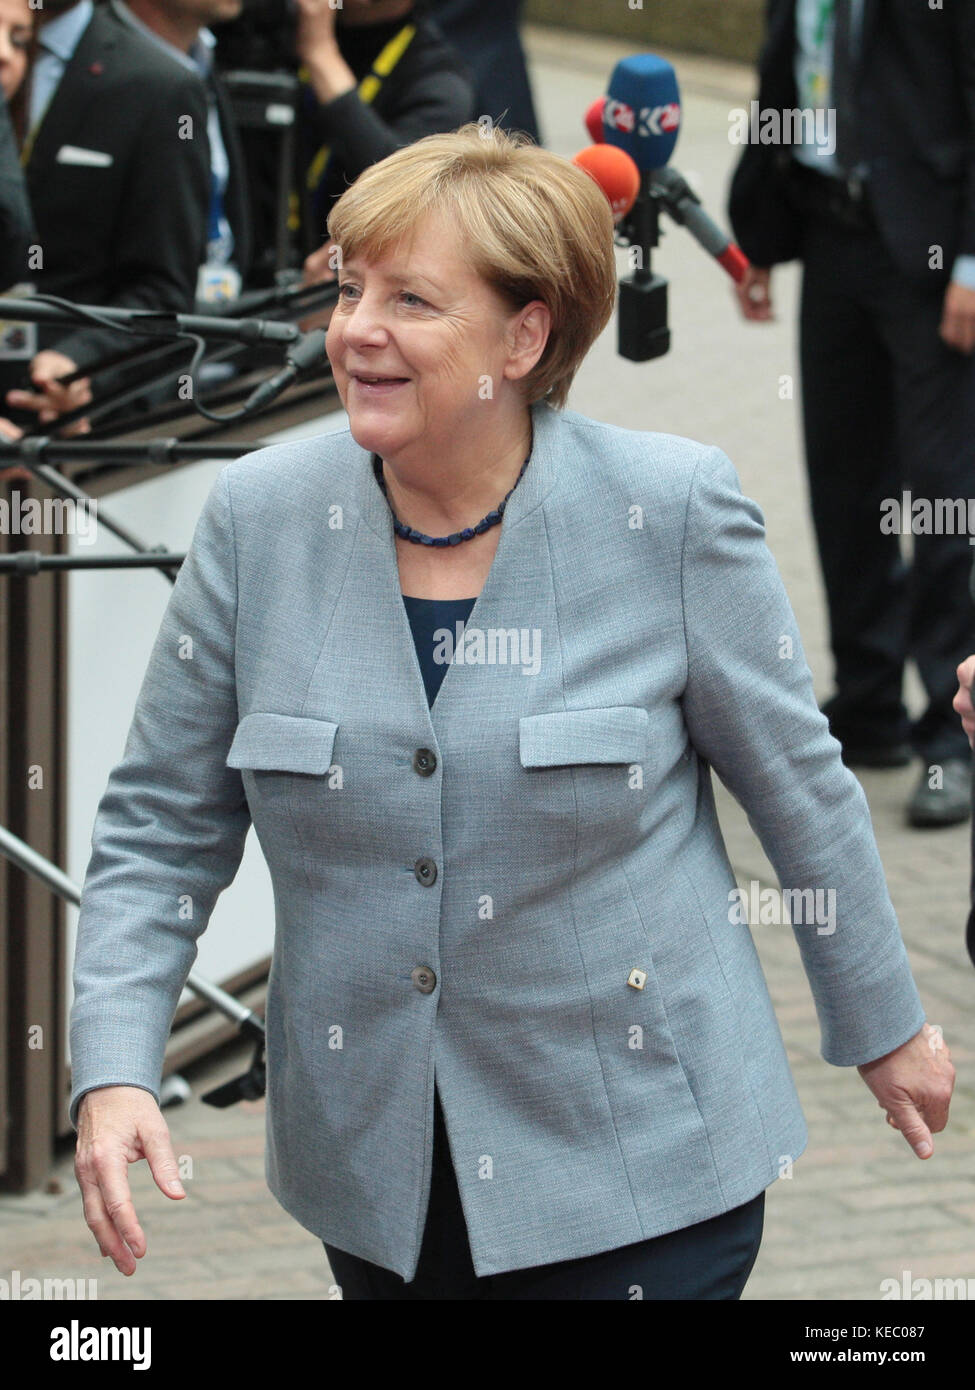 Bruxelles, Belgique. 19 oct, 2017. Angela Merkel, chancelière fédérale d'Allemagne, lors du Conseil européen, le crédit : leo cavallo/Alamy live news Banque D'Images